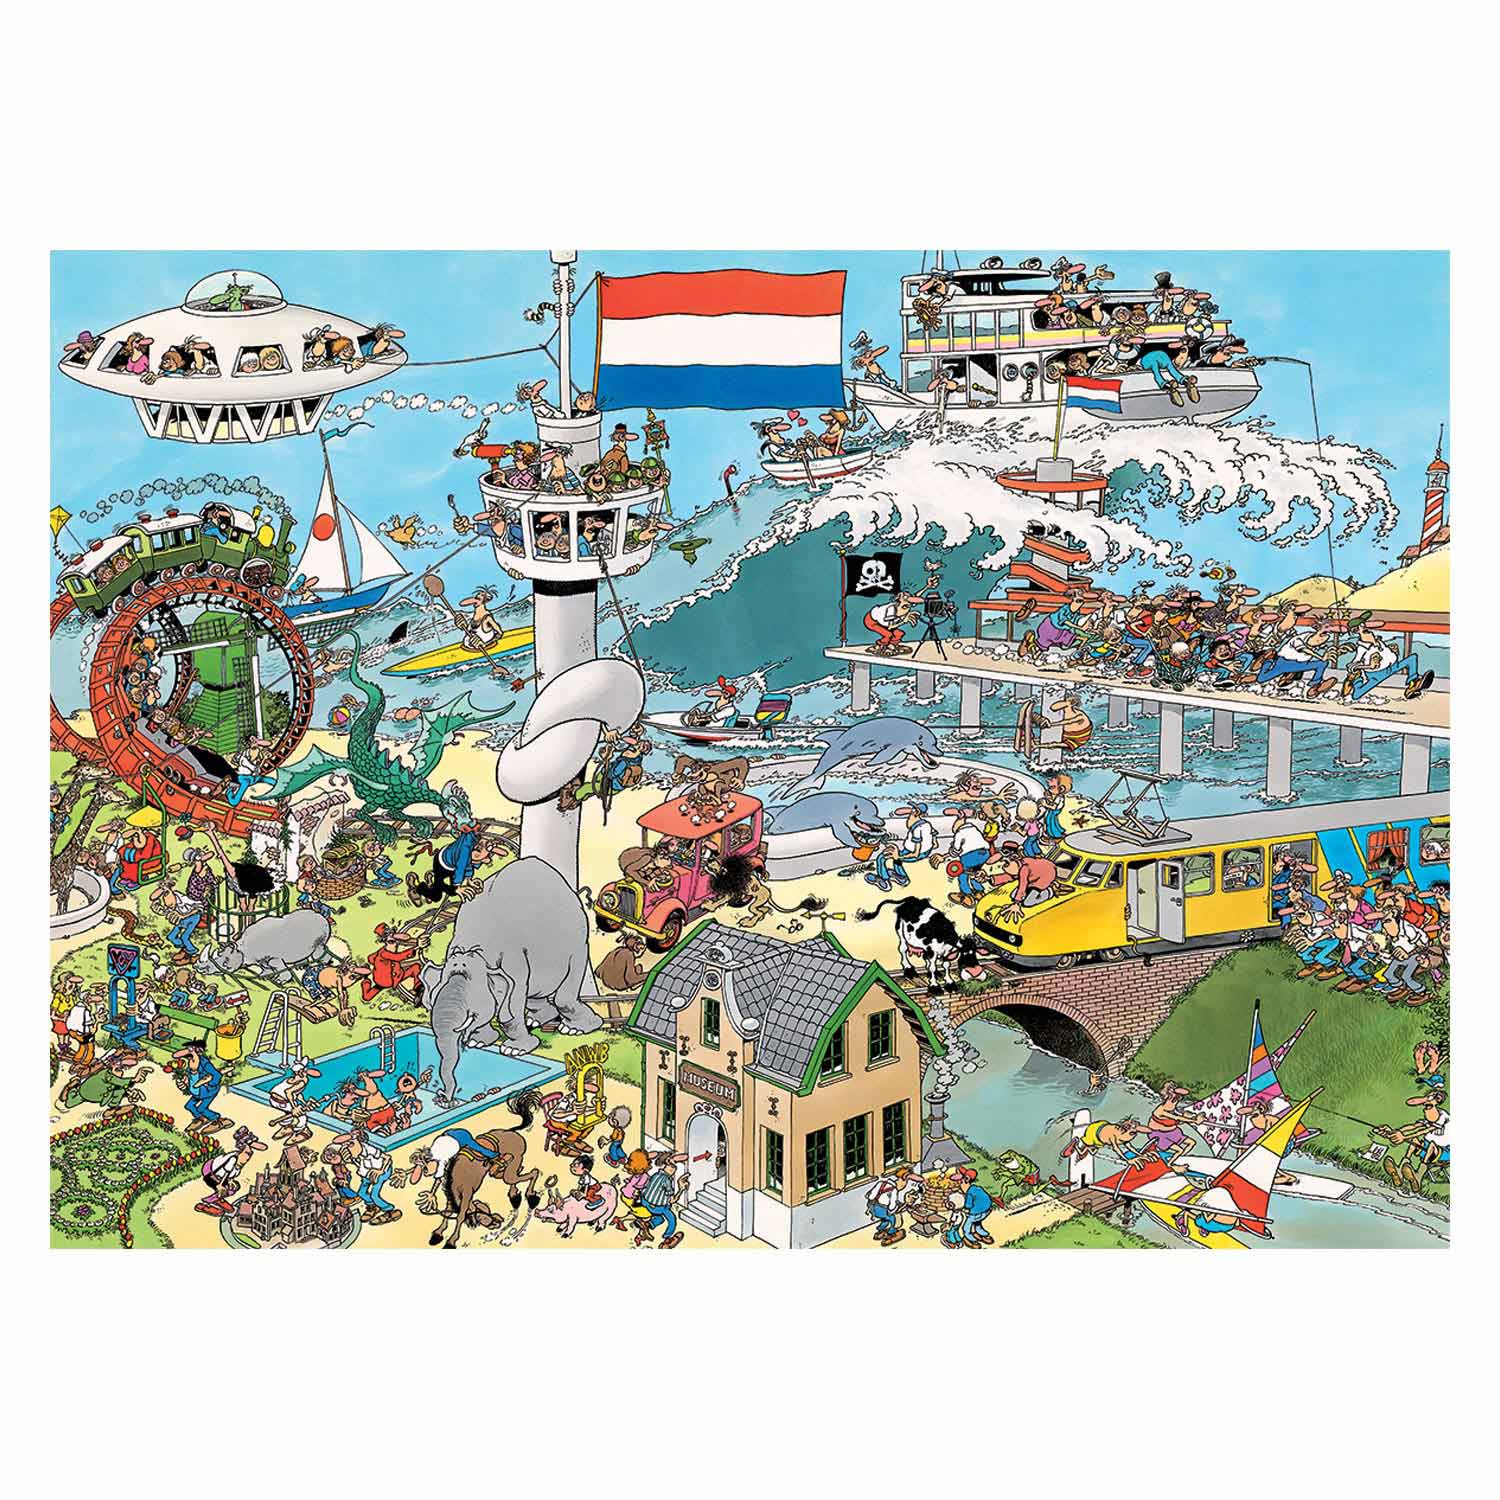 Puzzle Jan van Haasteren - Chaos de la circulation, 2x1000pcs.